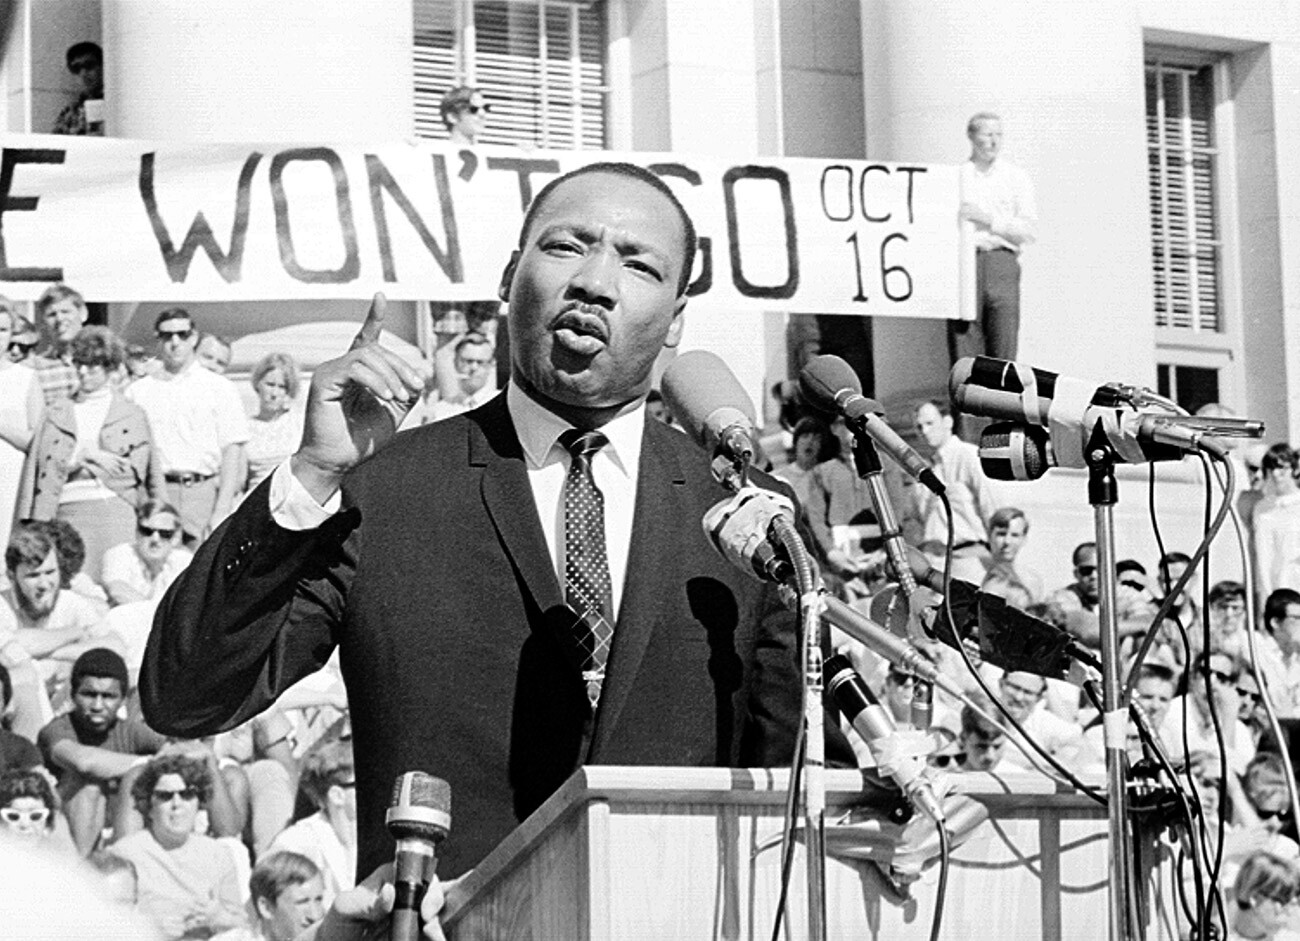 Pendeta Martin Luther King, Jr., pemimpin hak-hak sipil Amerika, menyampaikan pidato di hadapan sekitar 7.000 orang pada 17 Mei 1967 di Sproul Plaza Universitas California, di Berkeley, California.